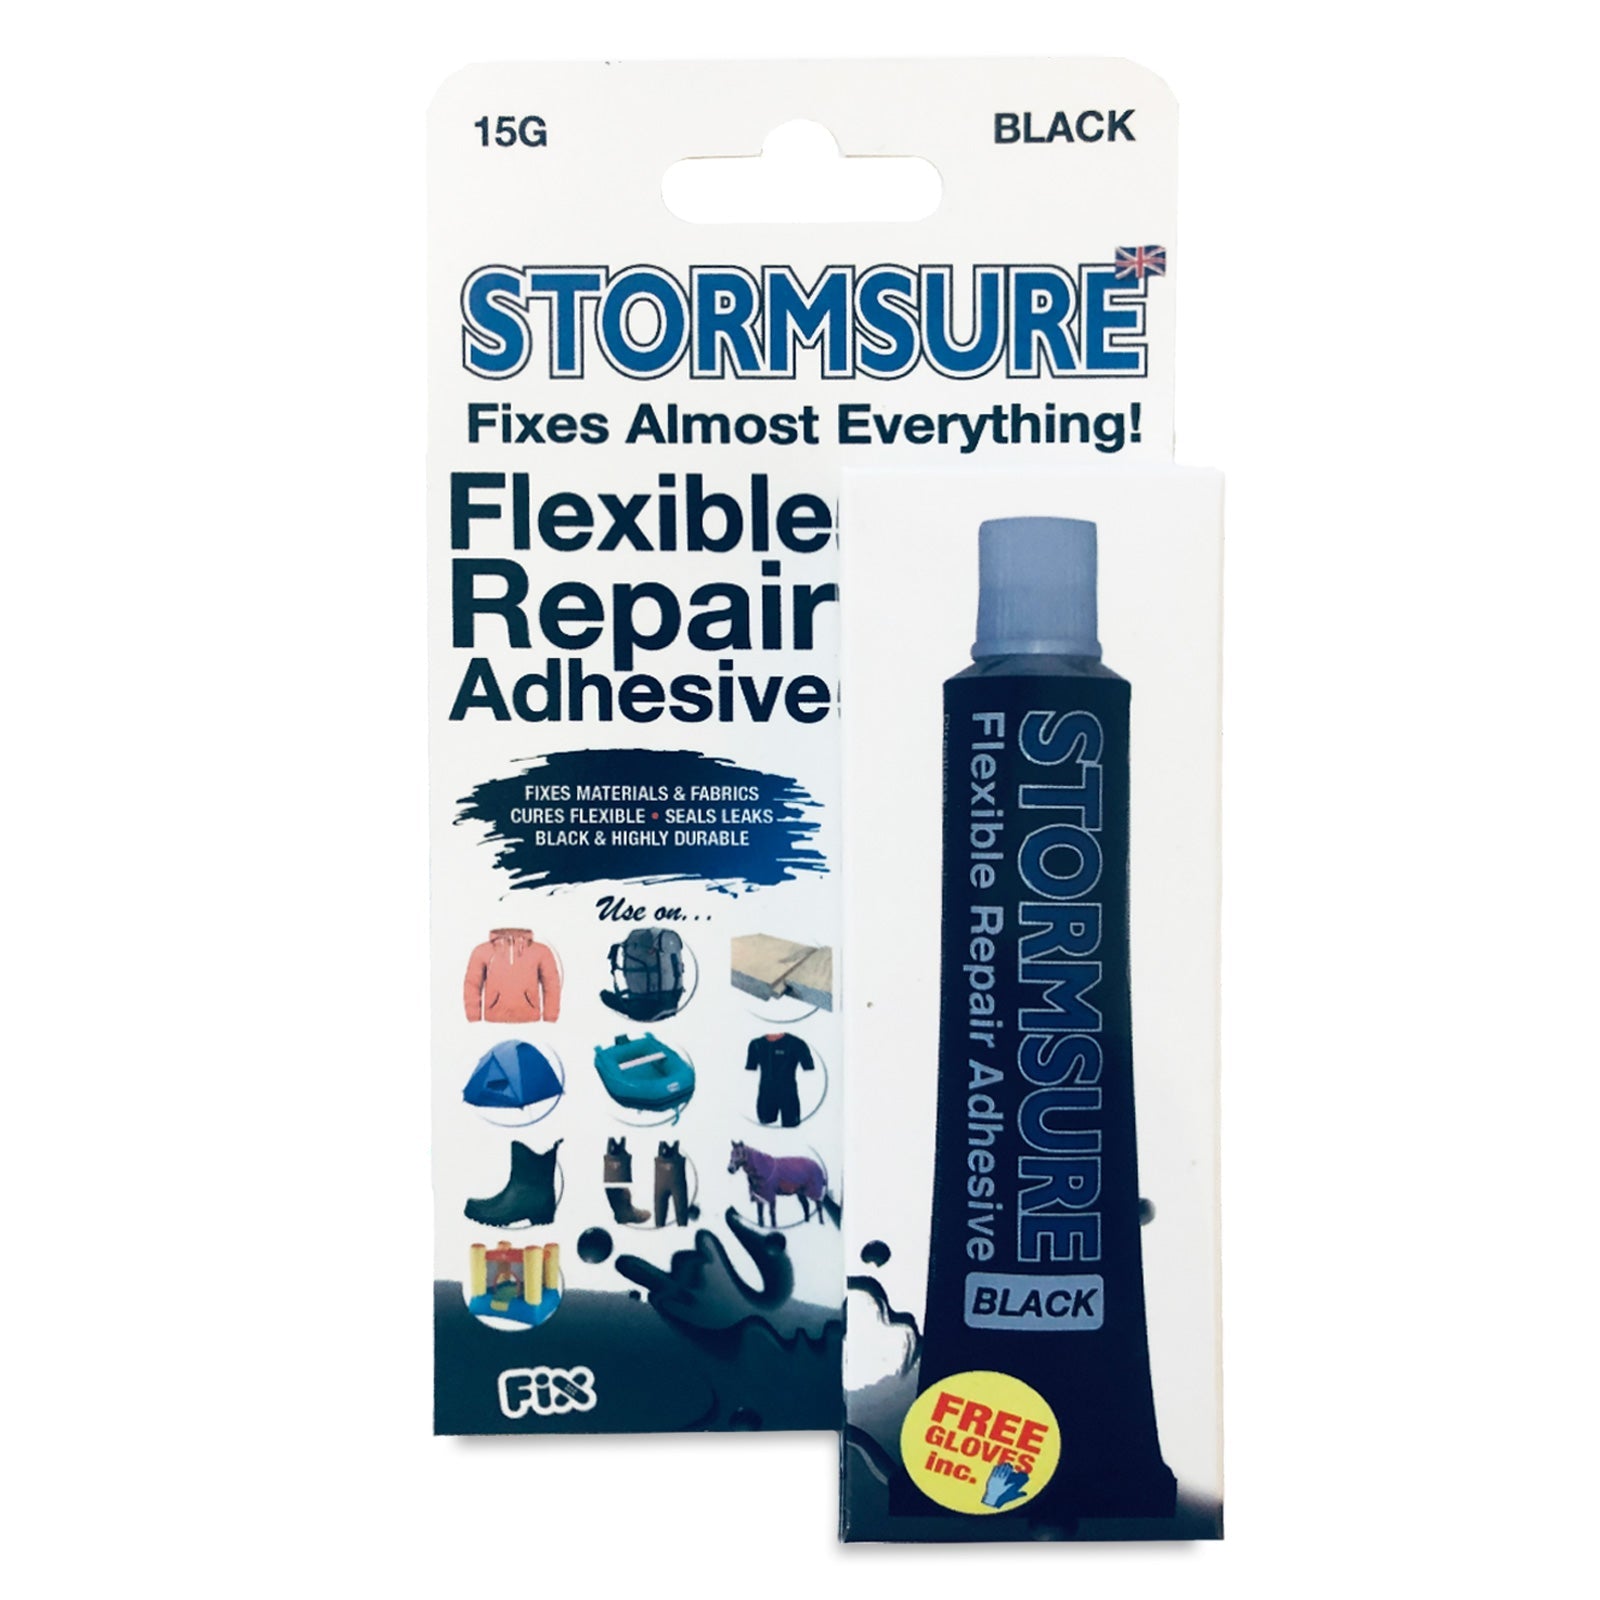 Stormsure Black Flexible Repair Adhesive 15g